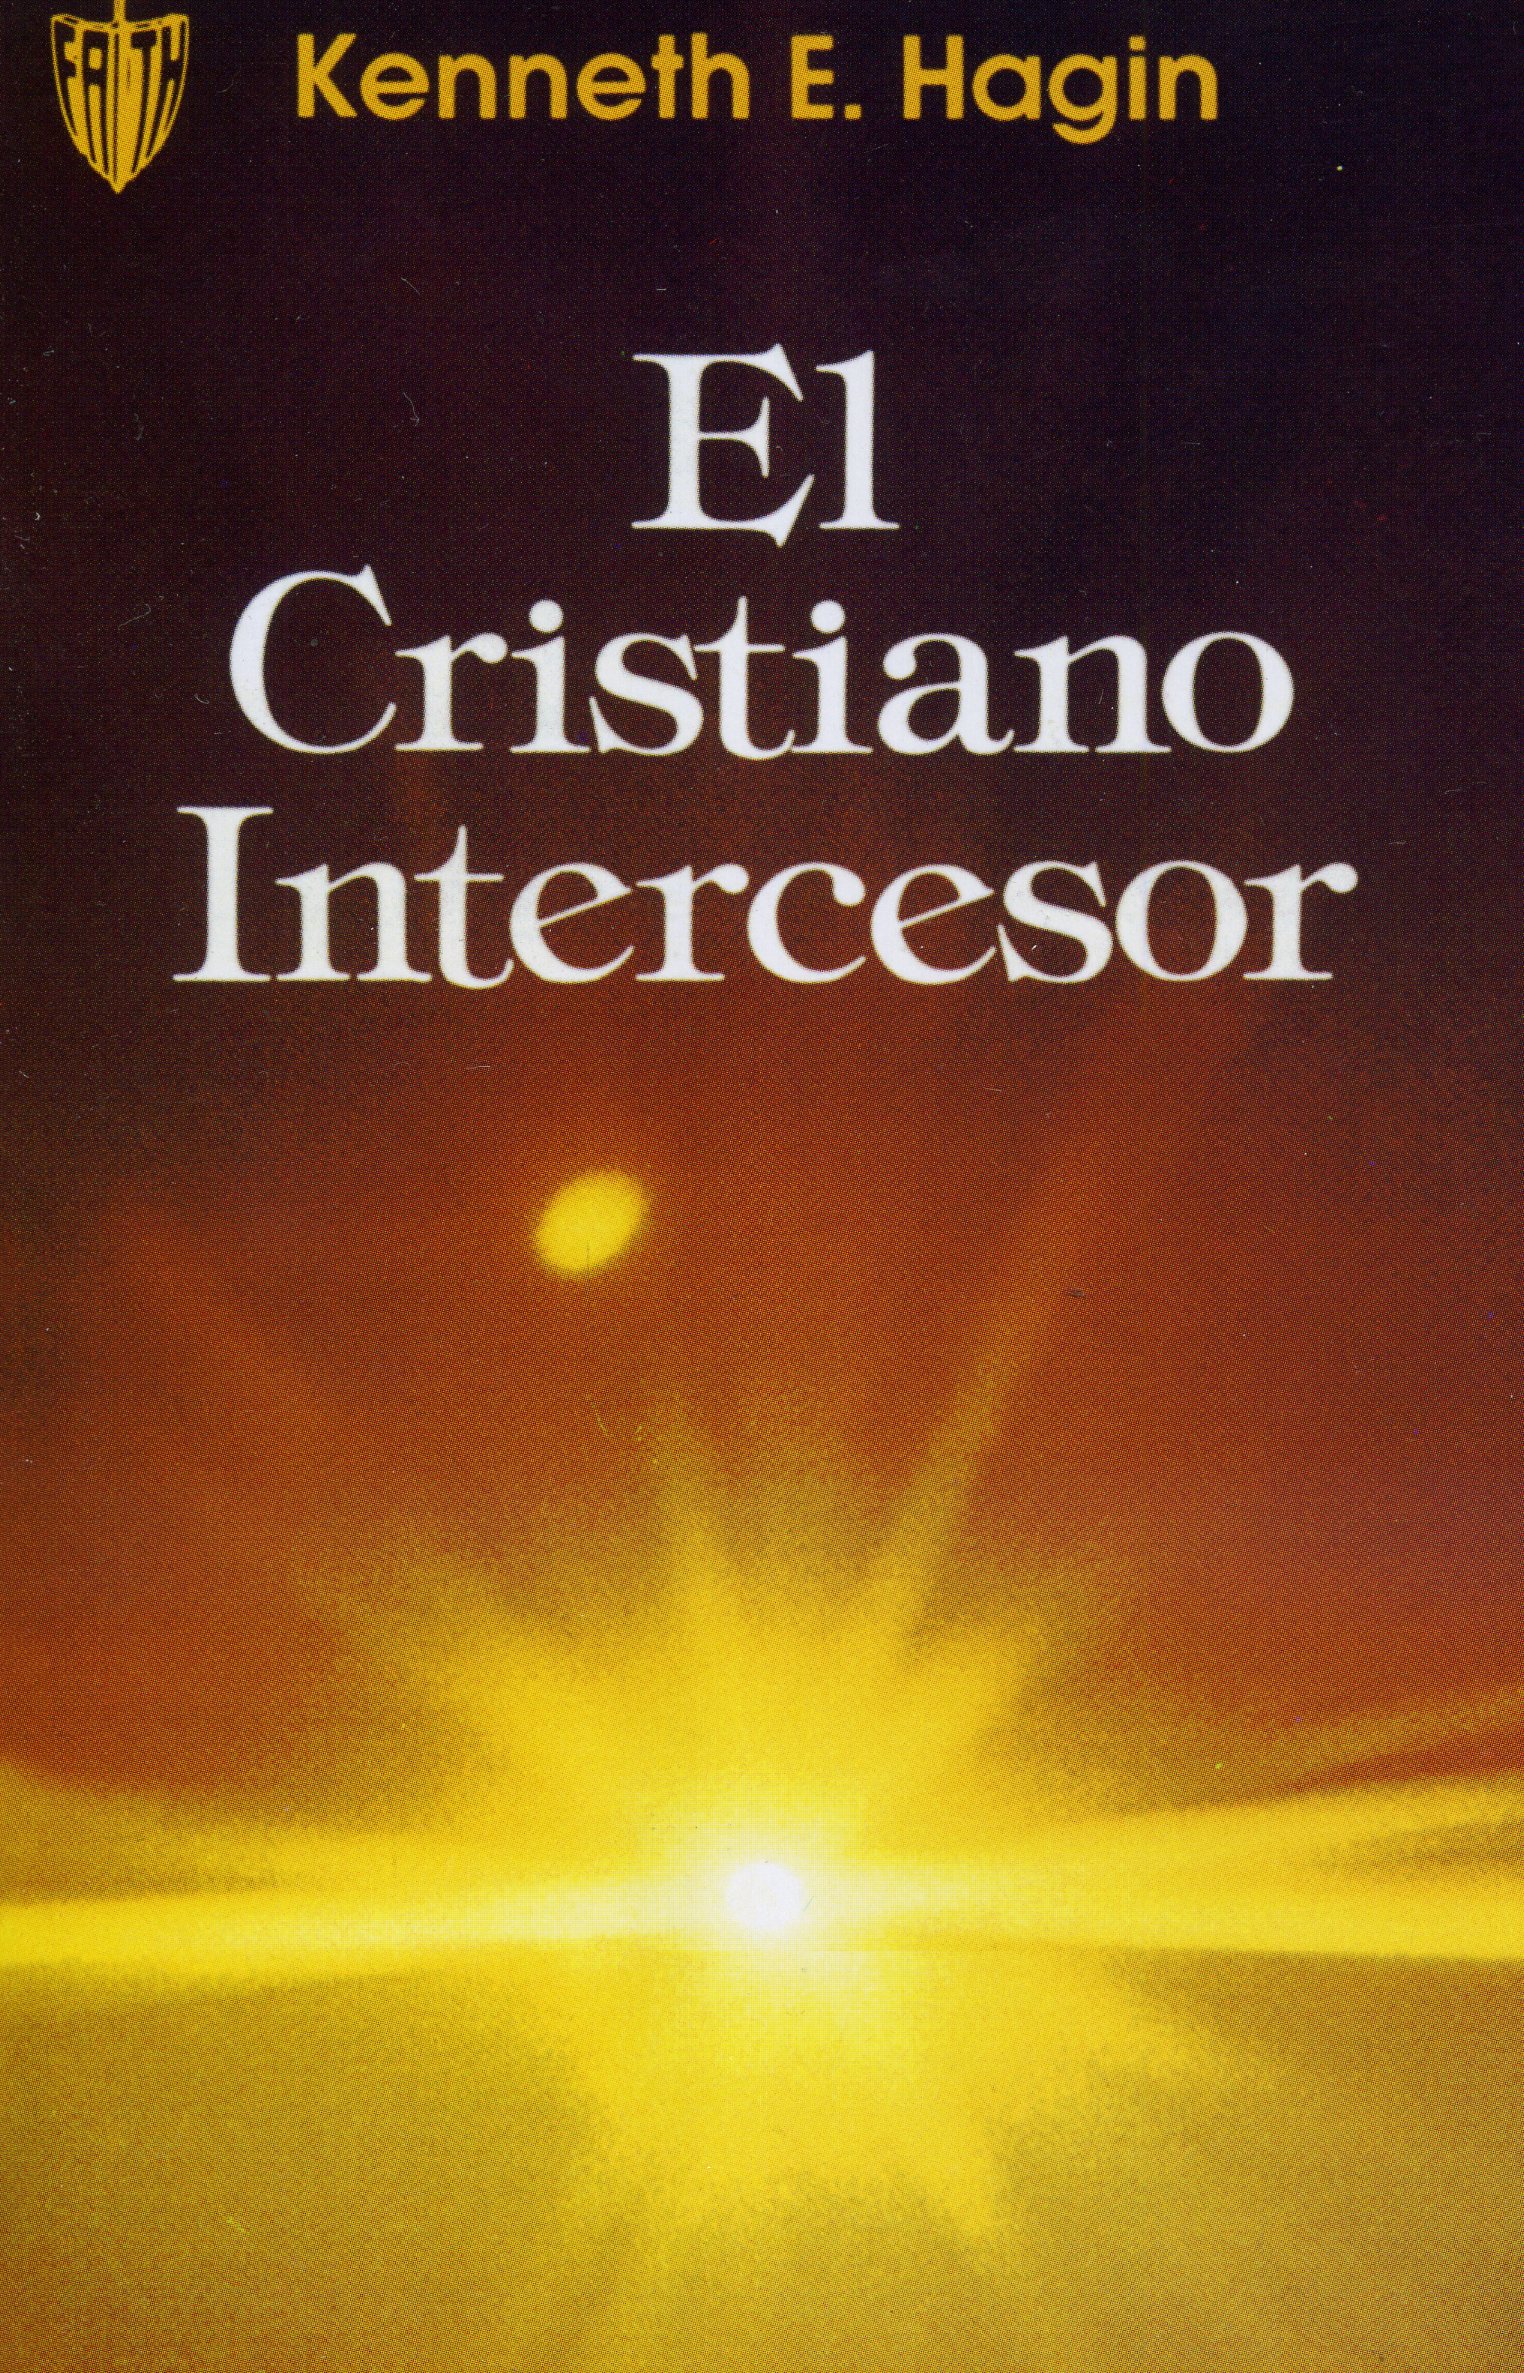 El cristiano intercesor